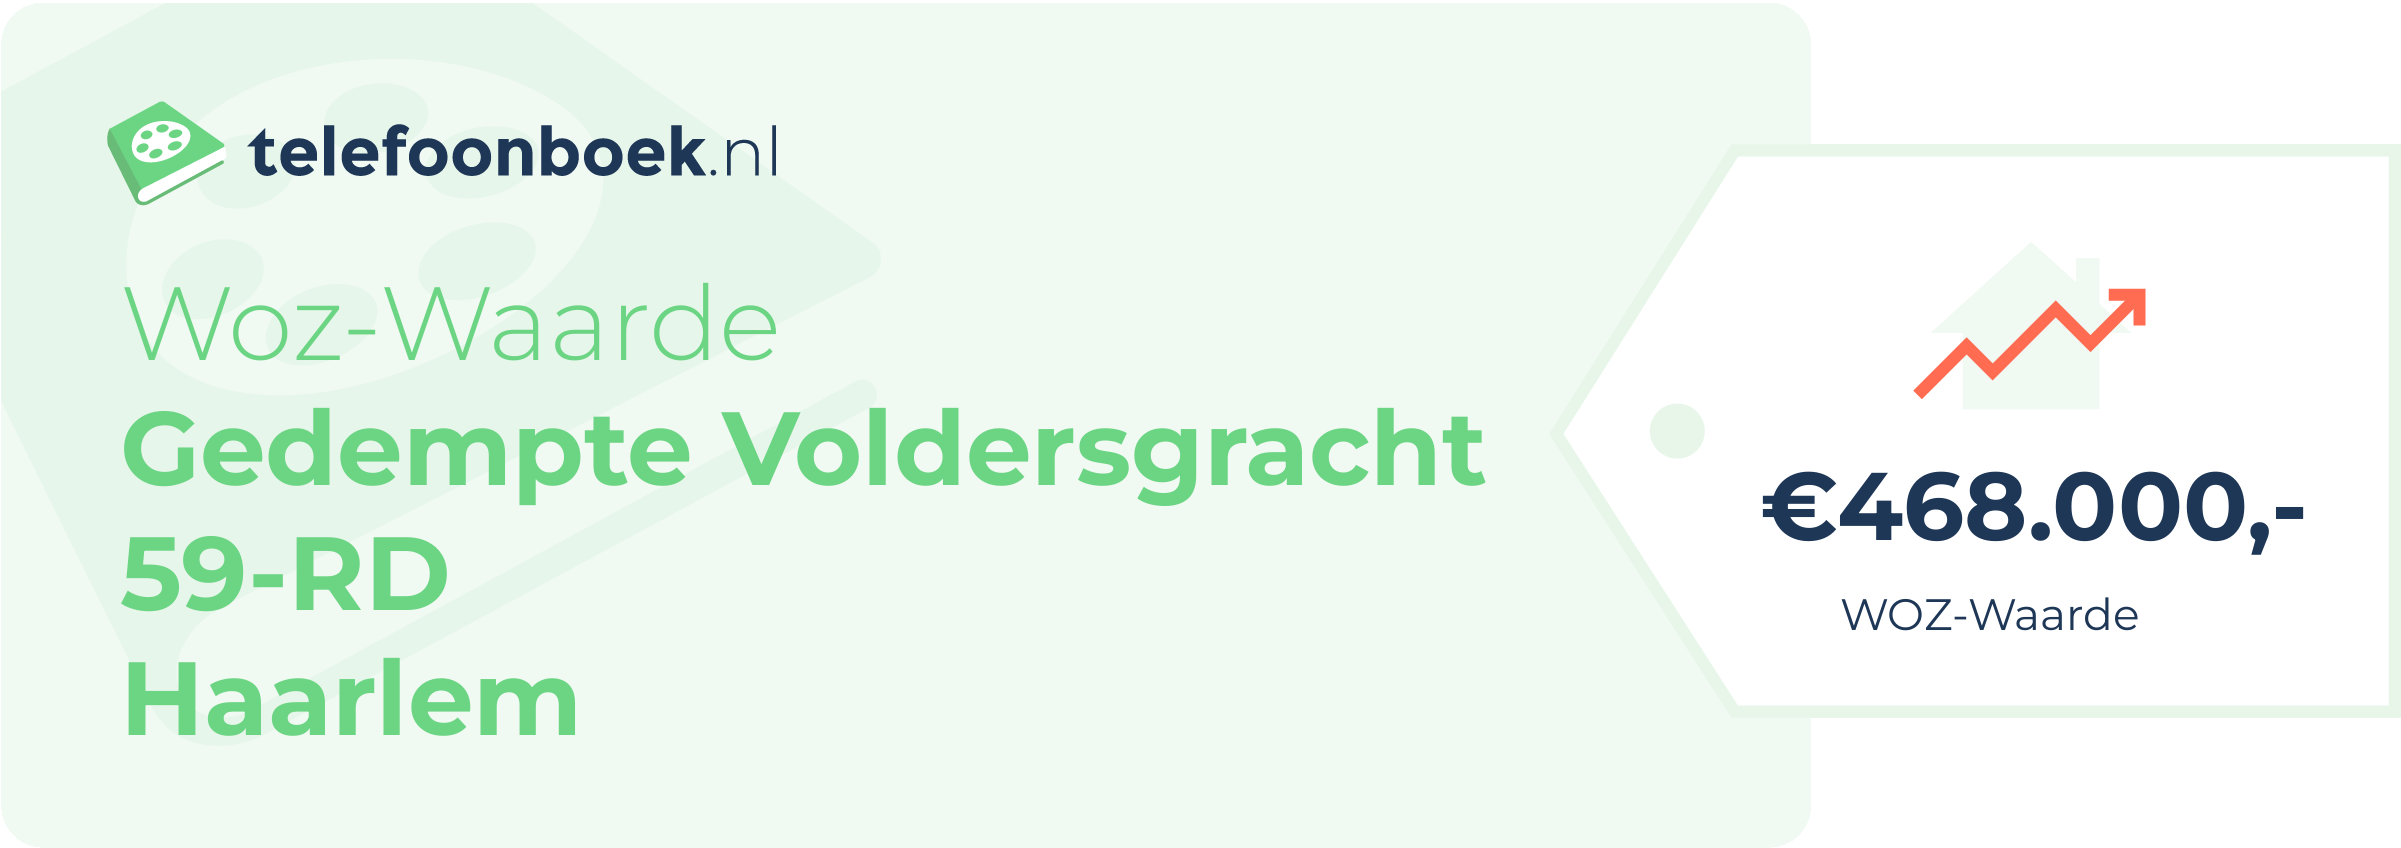 WOZ-waarde Gedempte Voldersgracht 59-RD Haarlem